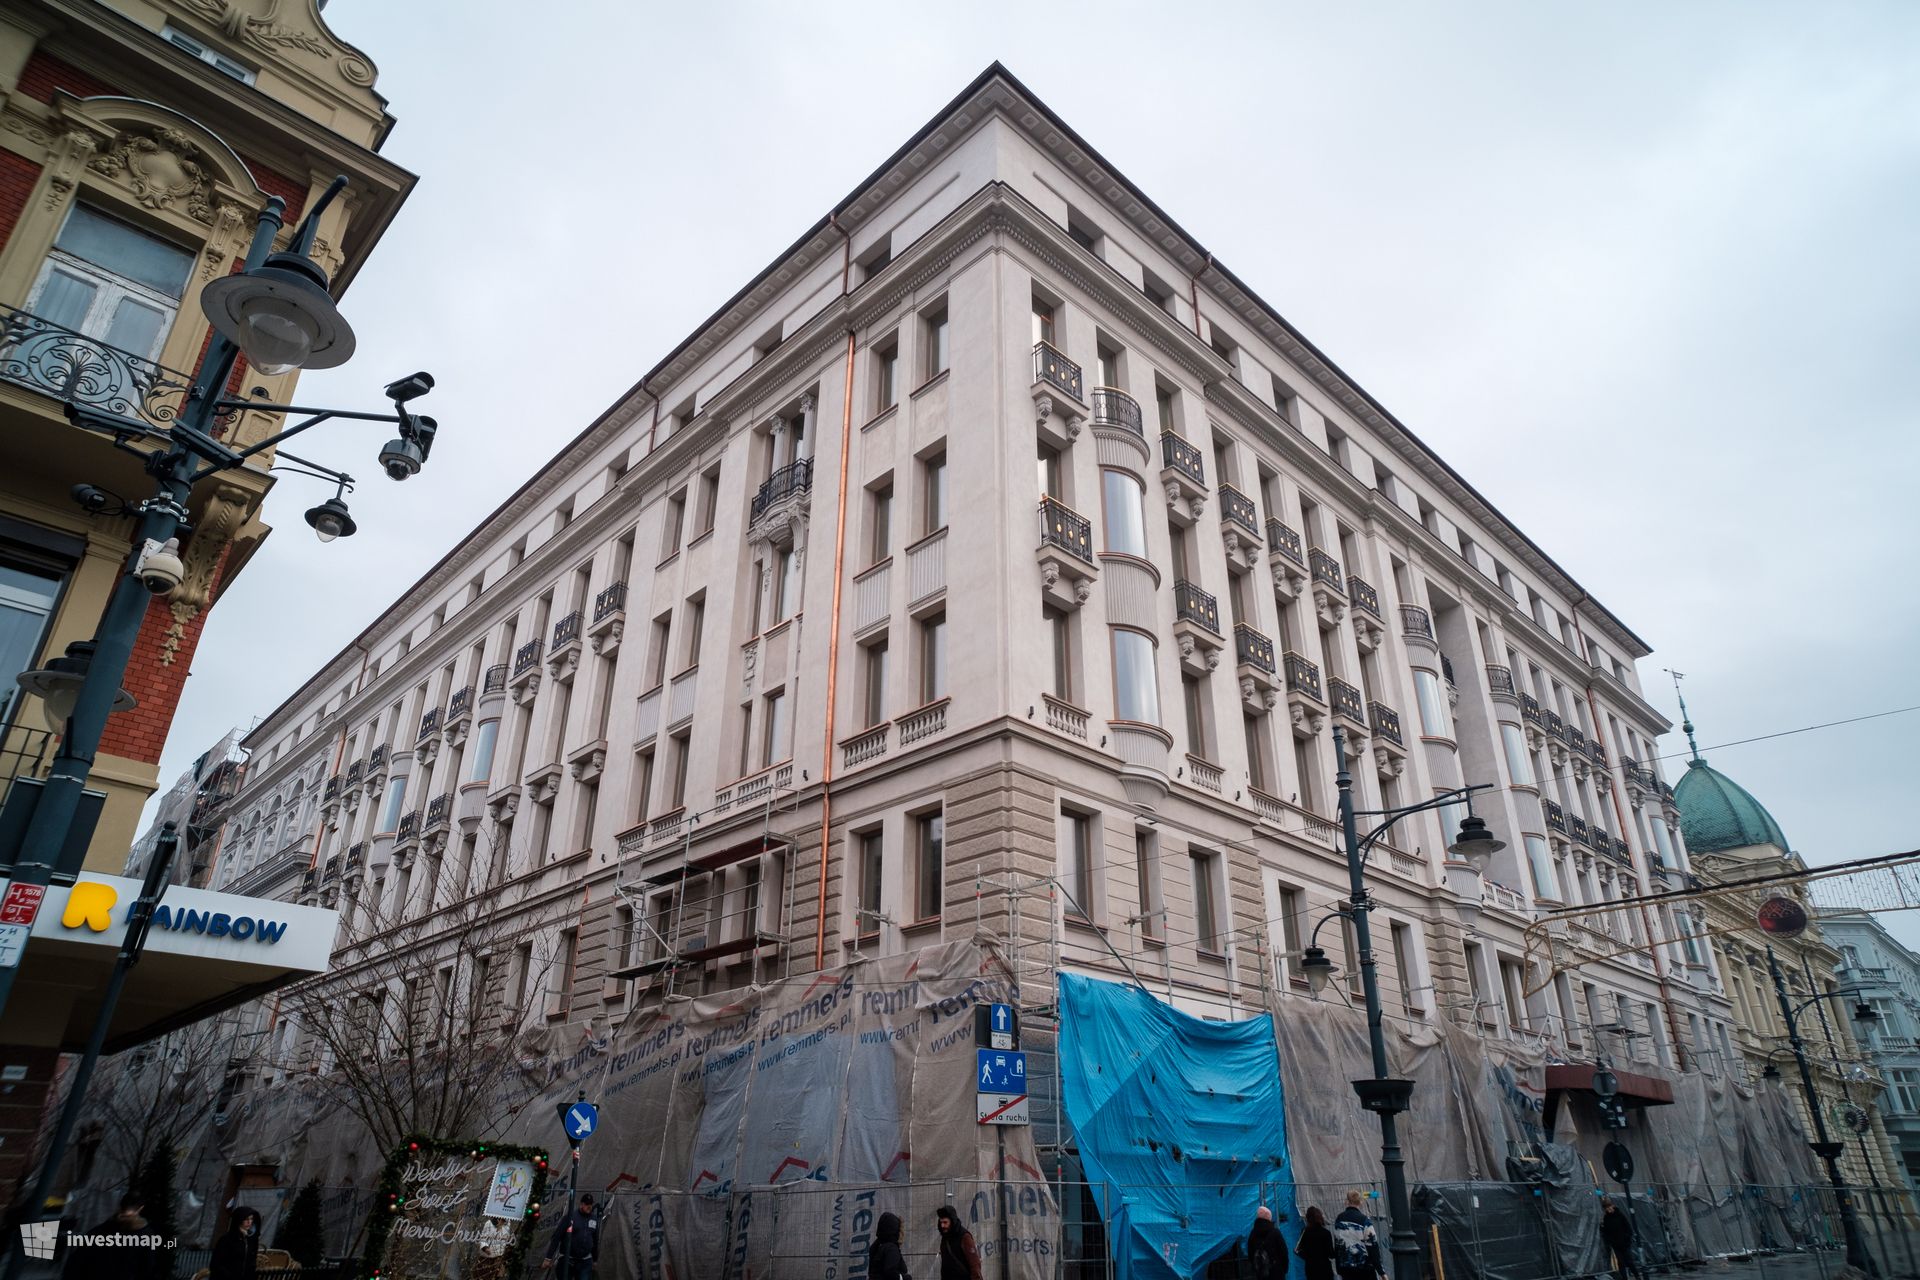 W centrum Łodzi, przy ulicy Piotrkowskiej, trwa rewitalizacja zabytkowego Grand Hotelu 